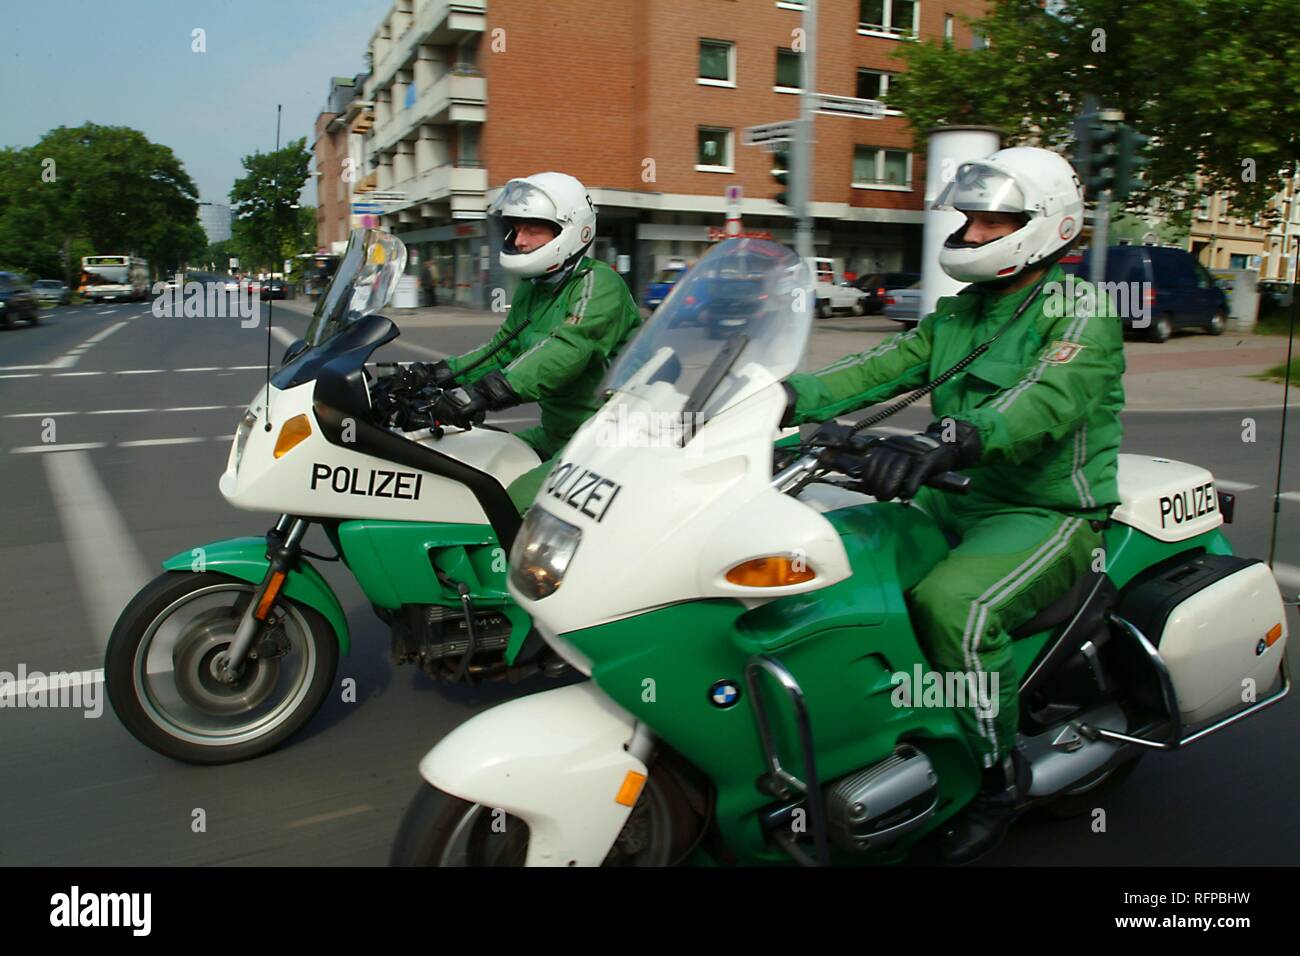 DEU, Germany, Duesseldorf : Police bike patrol. Stock Photo